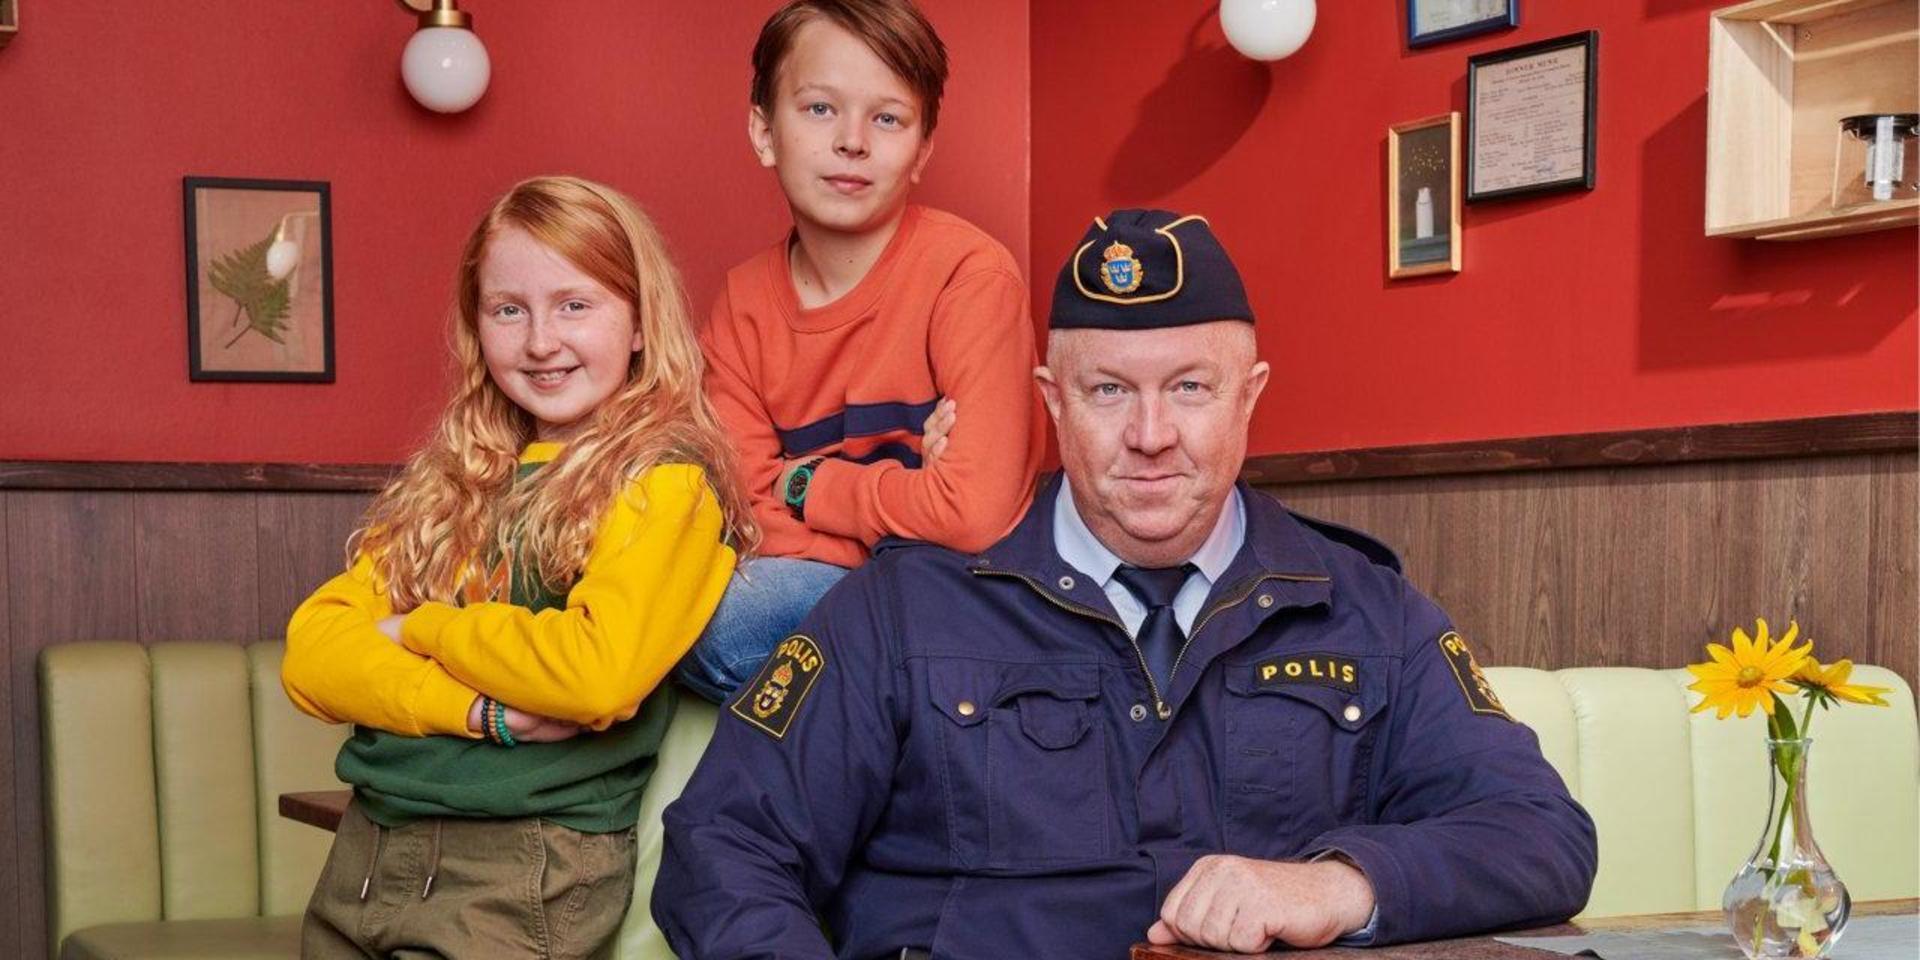 Ellen Sarri Littorin (Maja), Elis Nyström (Lasse) och Anders Jansson (polismästaren) spelar huvudrollerna i 'LasseMajas detektivbyrå'. Pressbild.